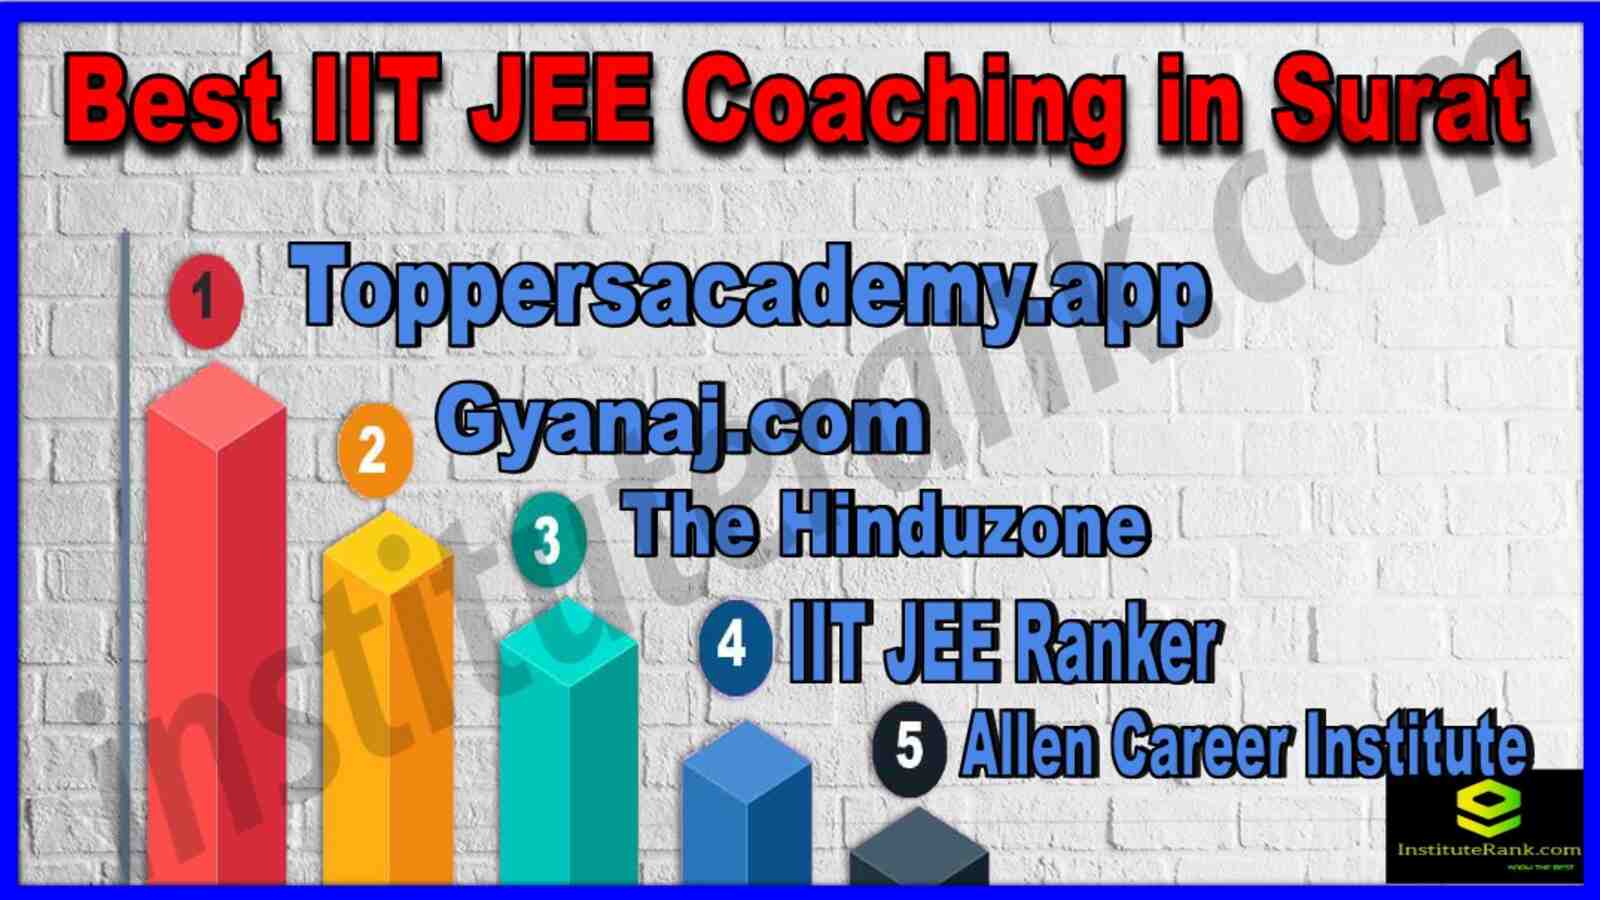 Top 10 IIT JEE Coaching Institutes In Surat